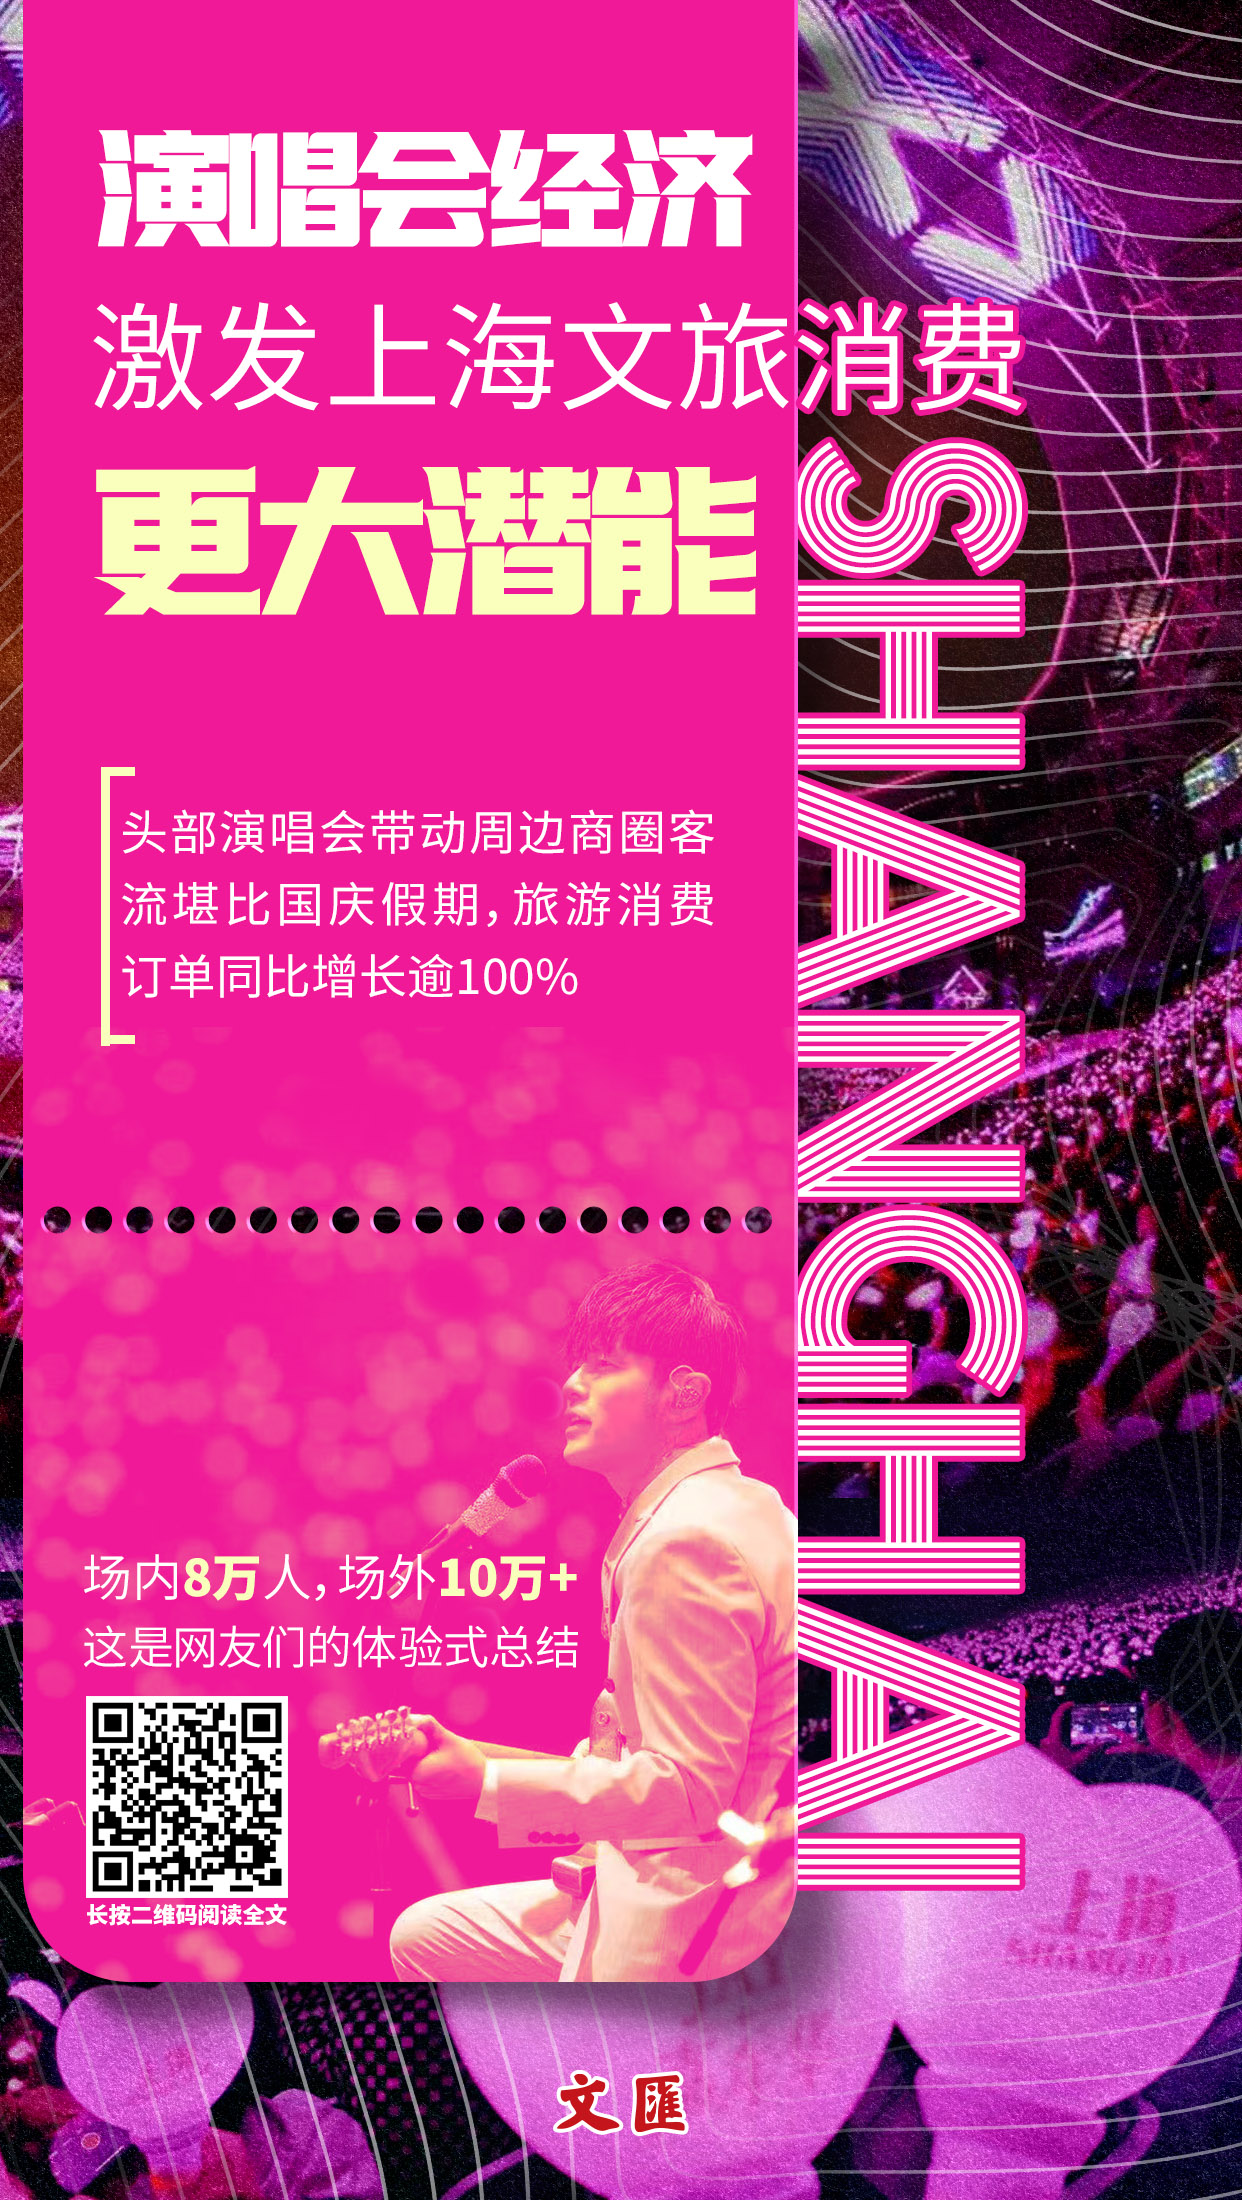 演唱会经济激发上海文旅消费更大潜能.jpg